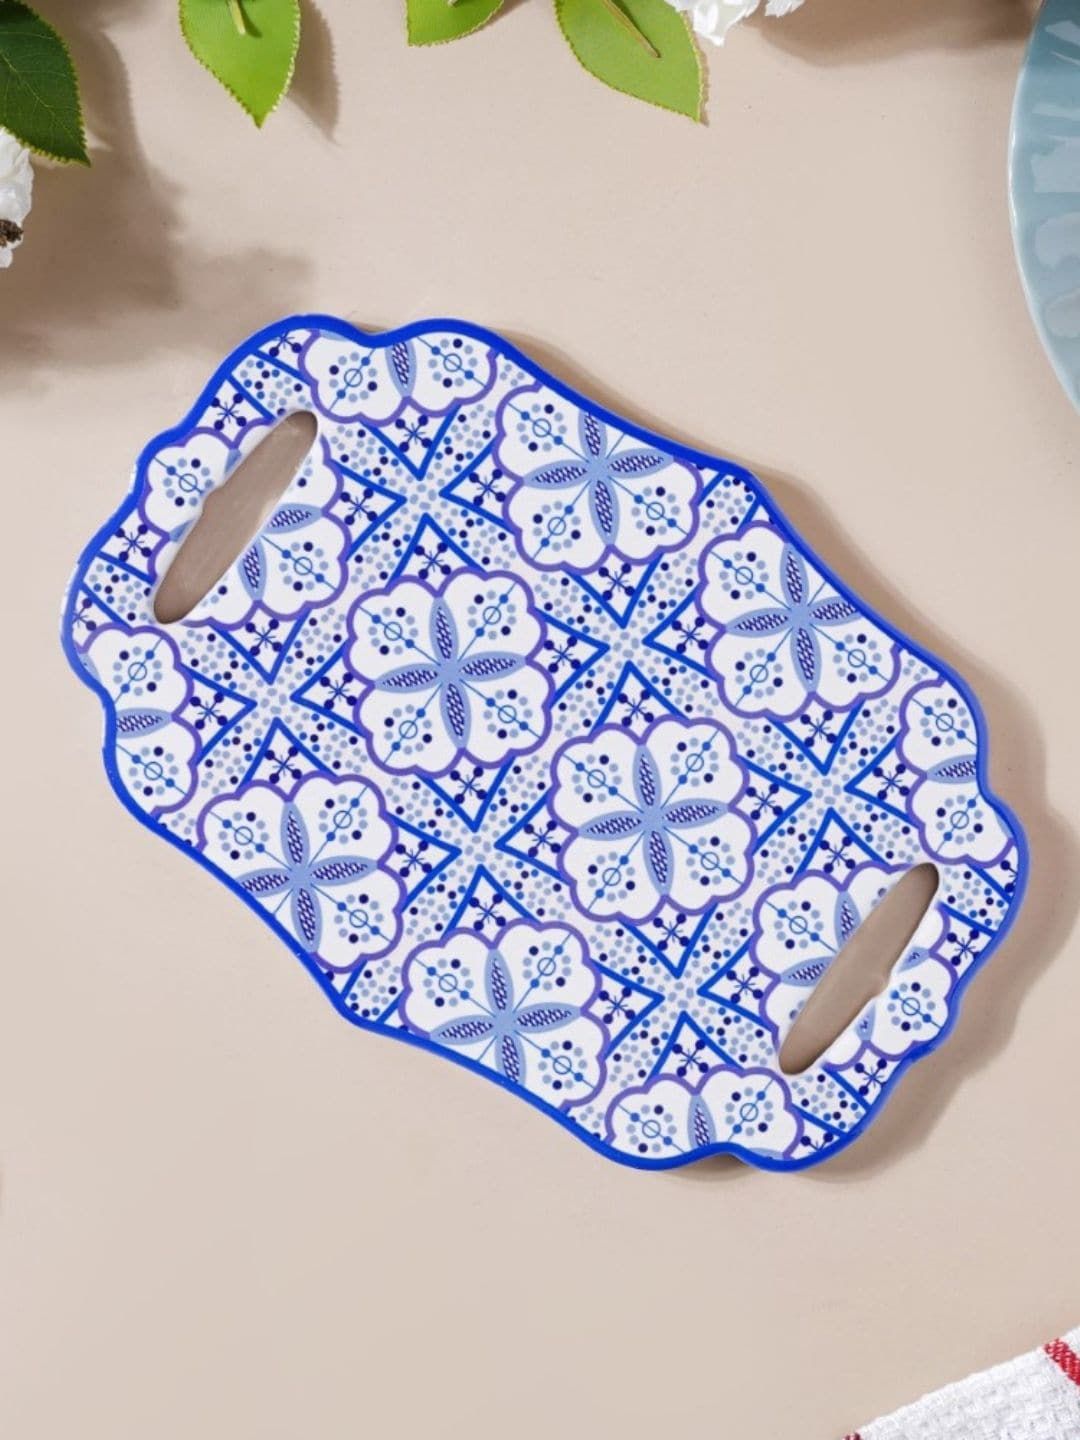 Nestasia Blue & White Printed Ceramic Trivet Price in India